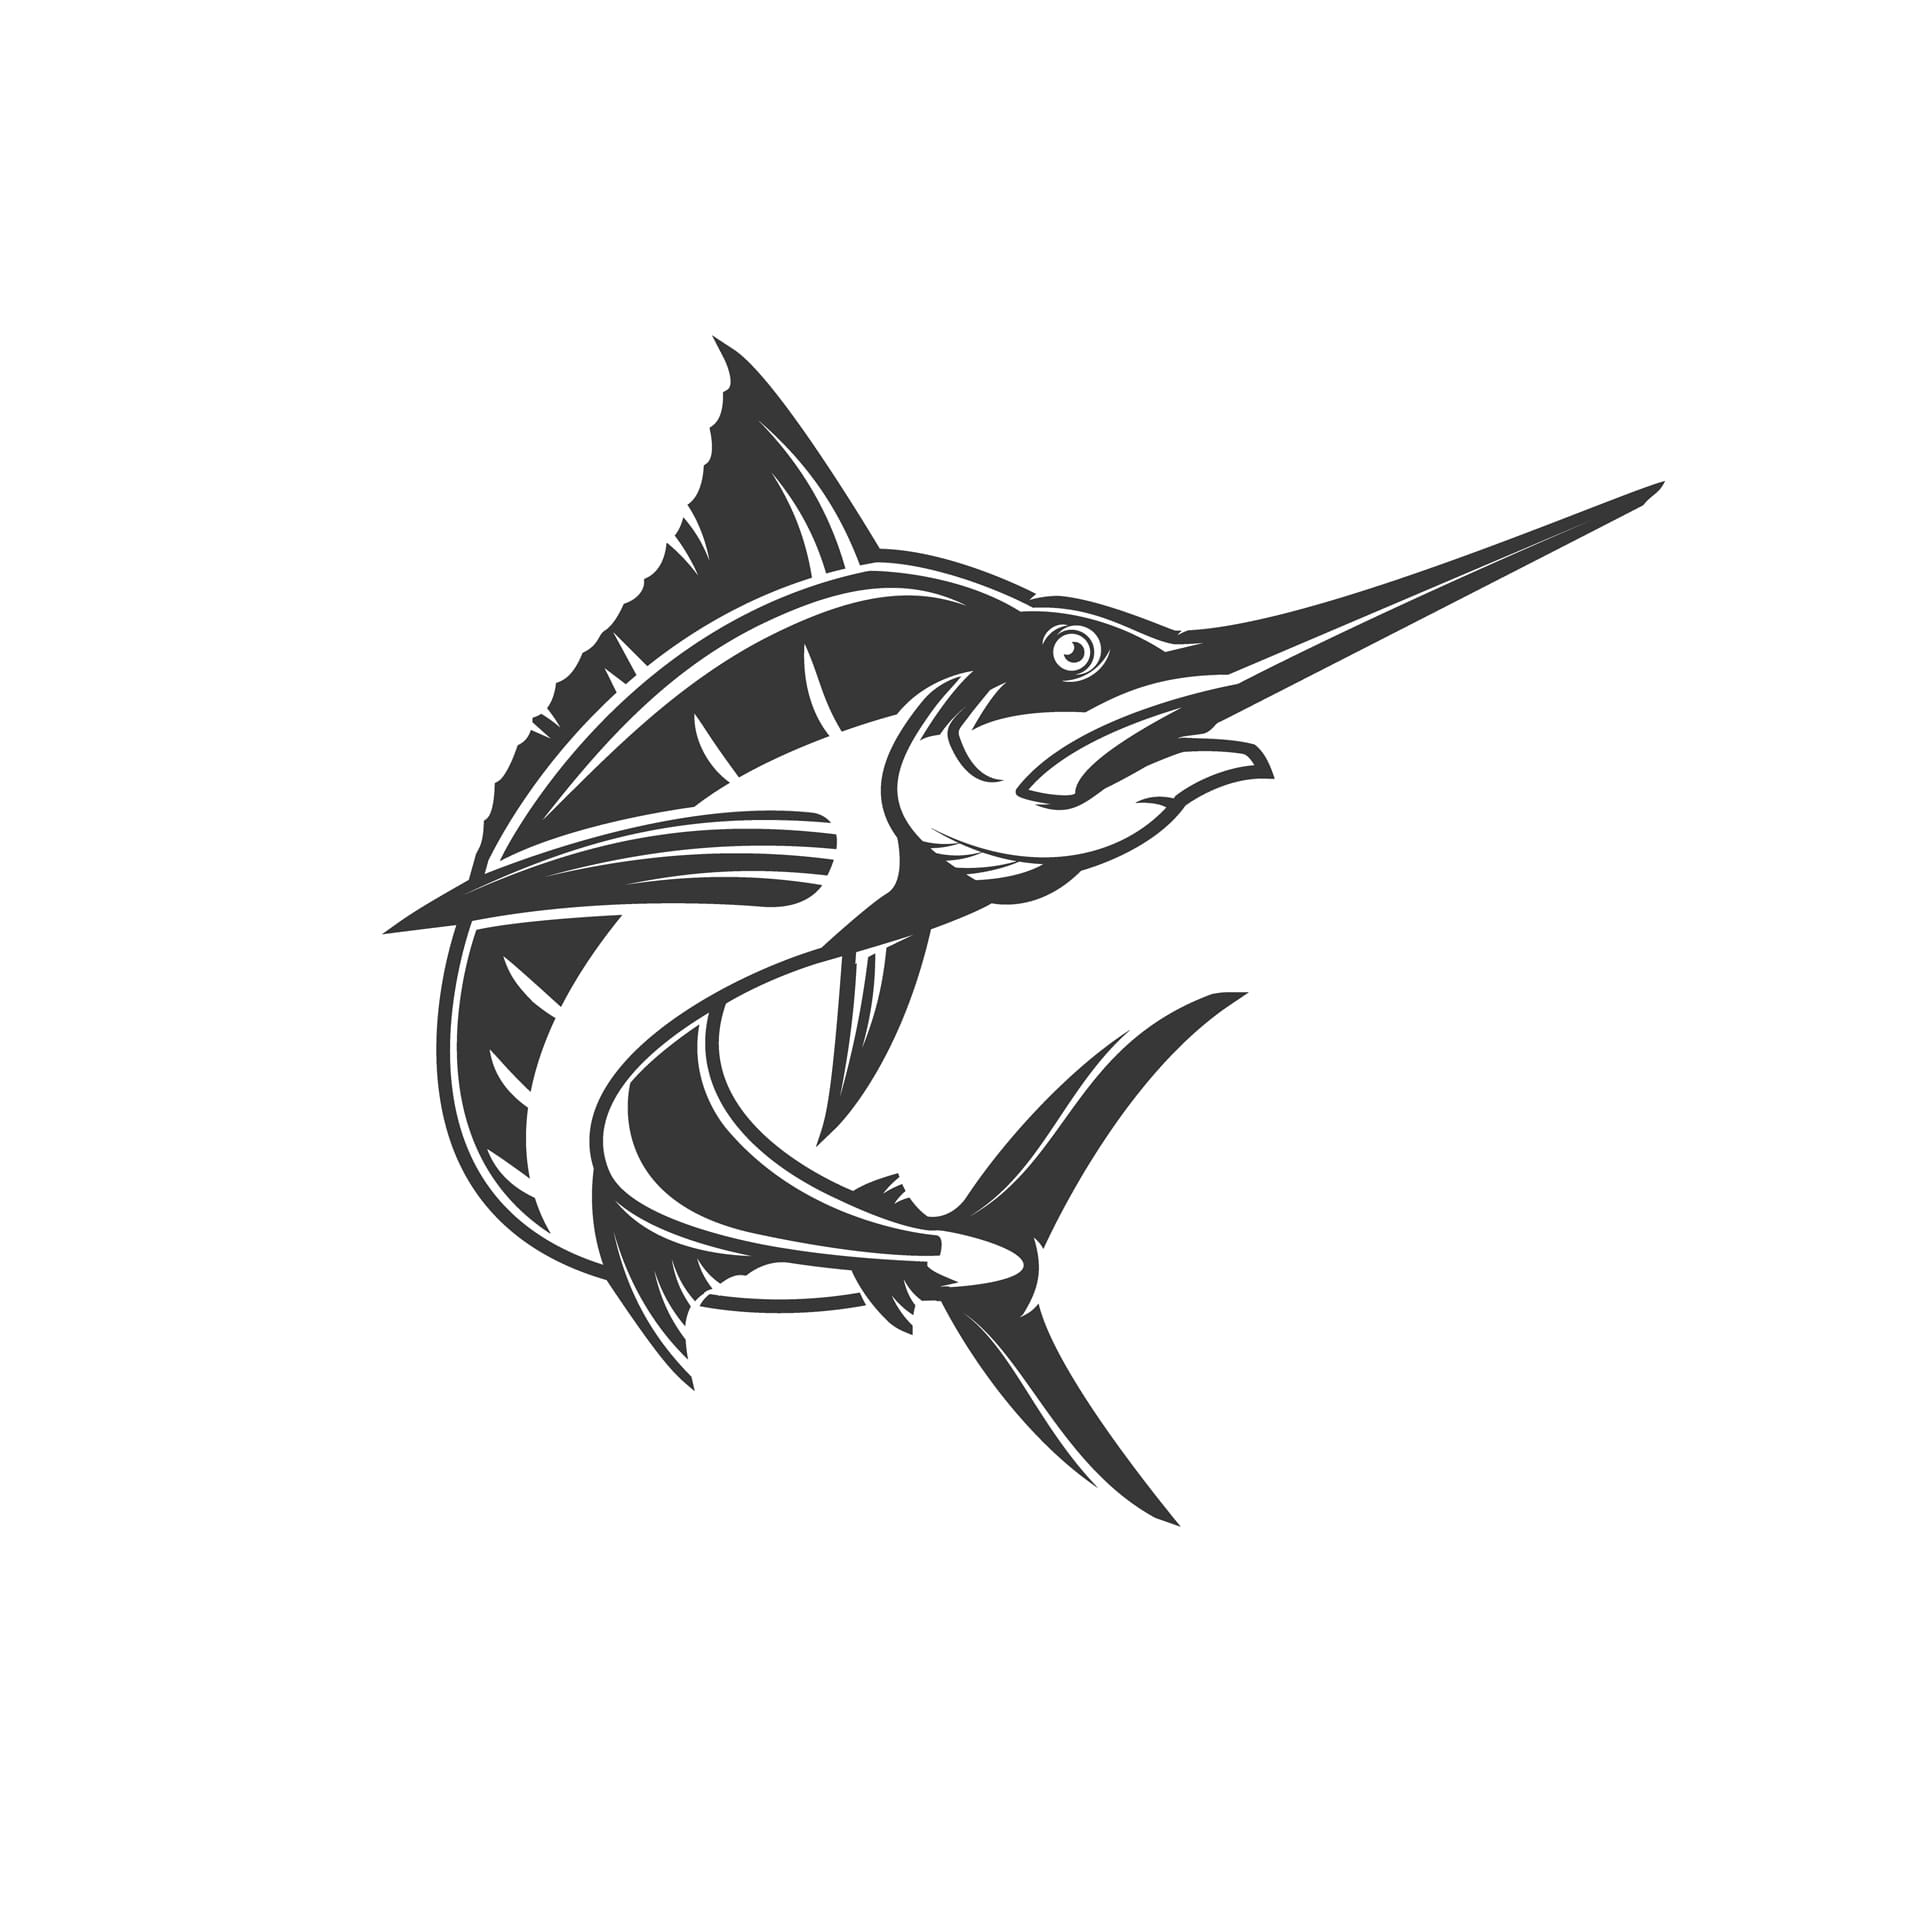 Swordfish illustration elements logo label emblem sign